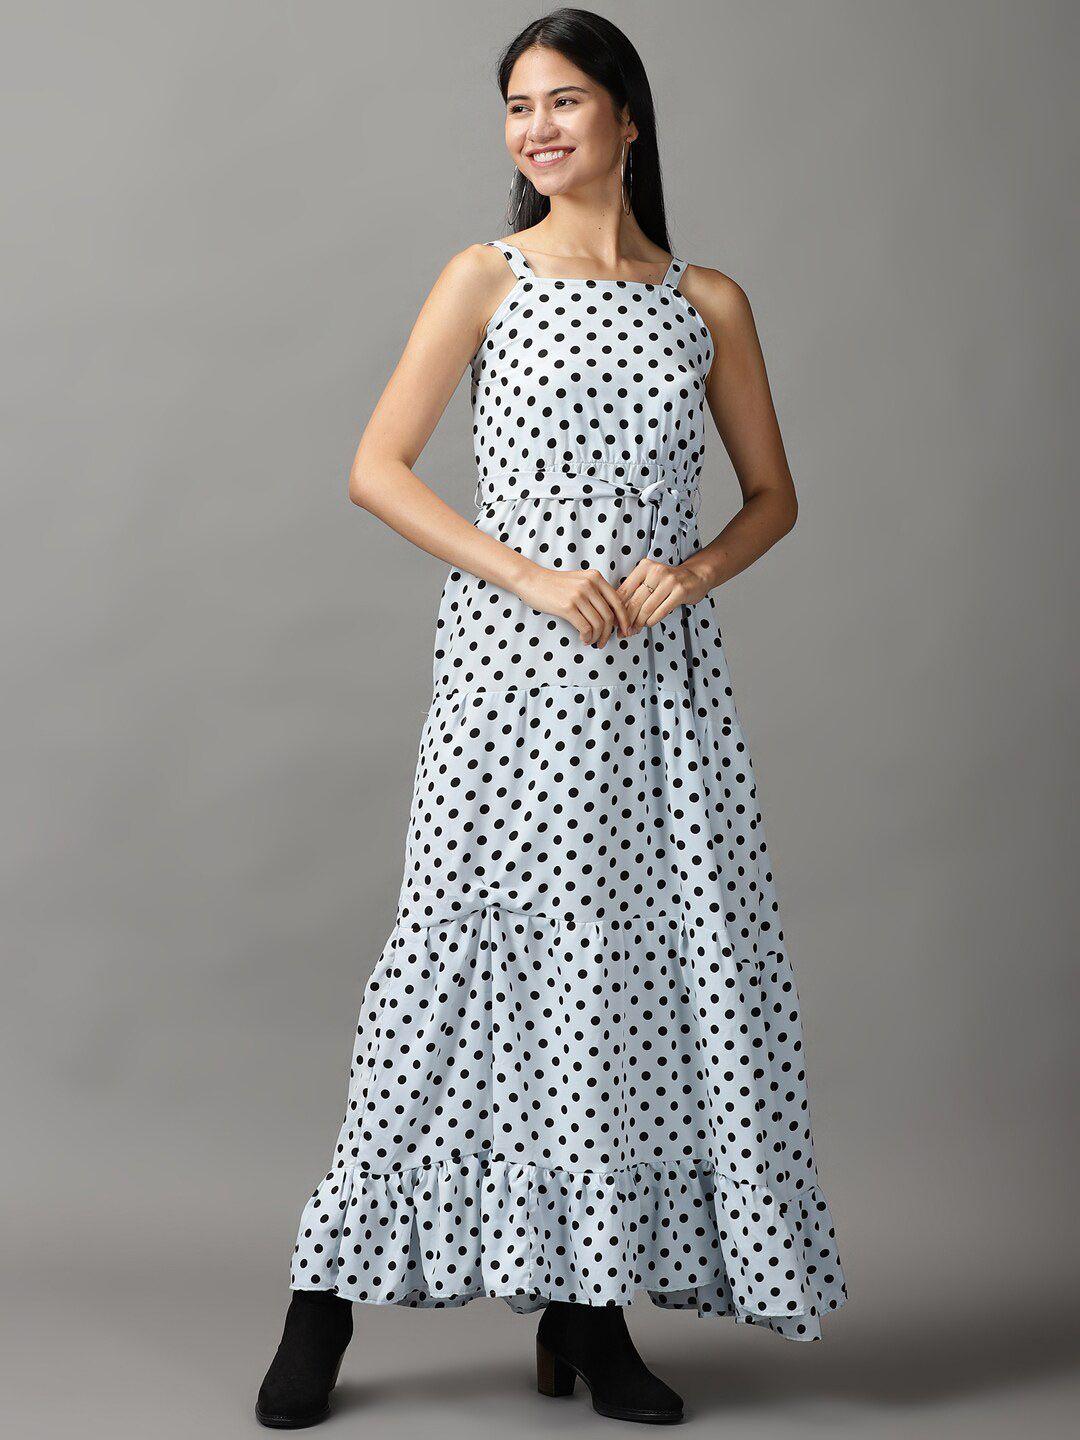 showoff polka dots printed maxi dress